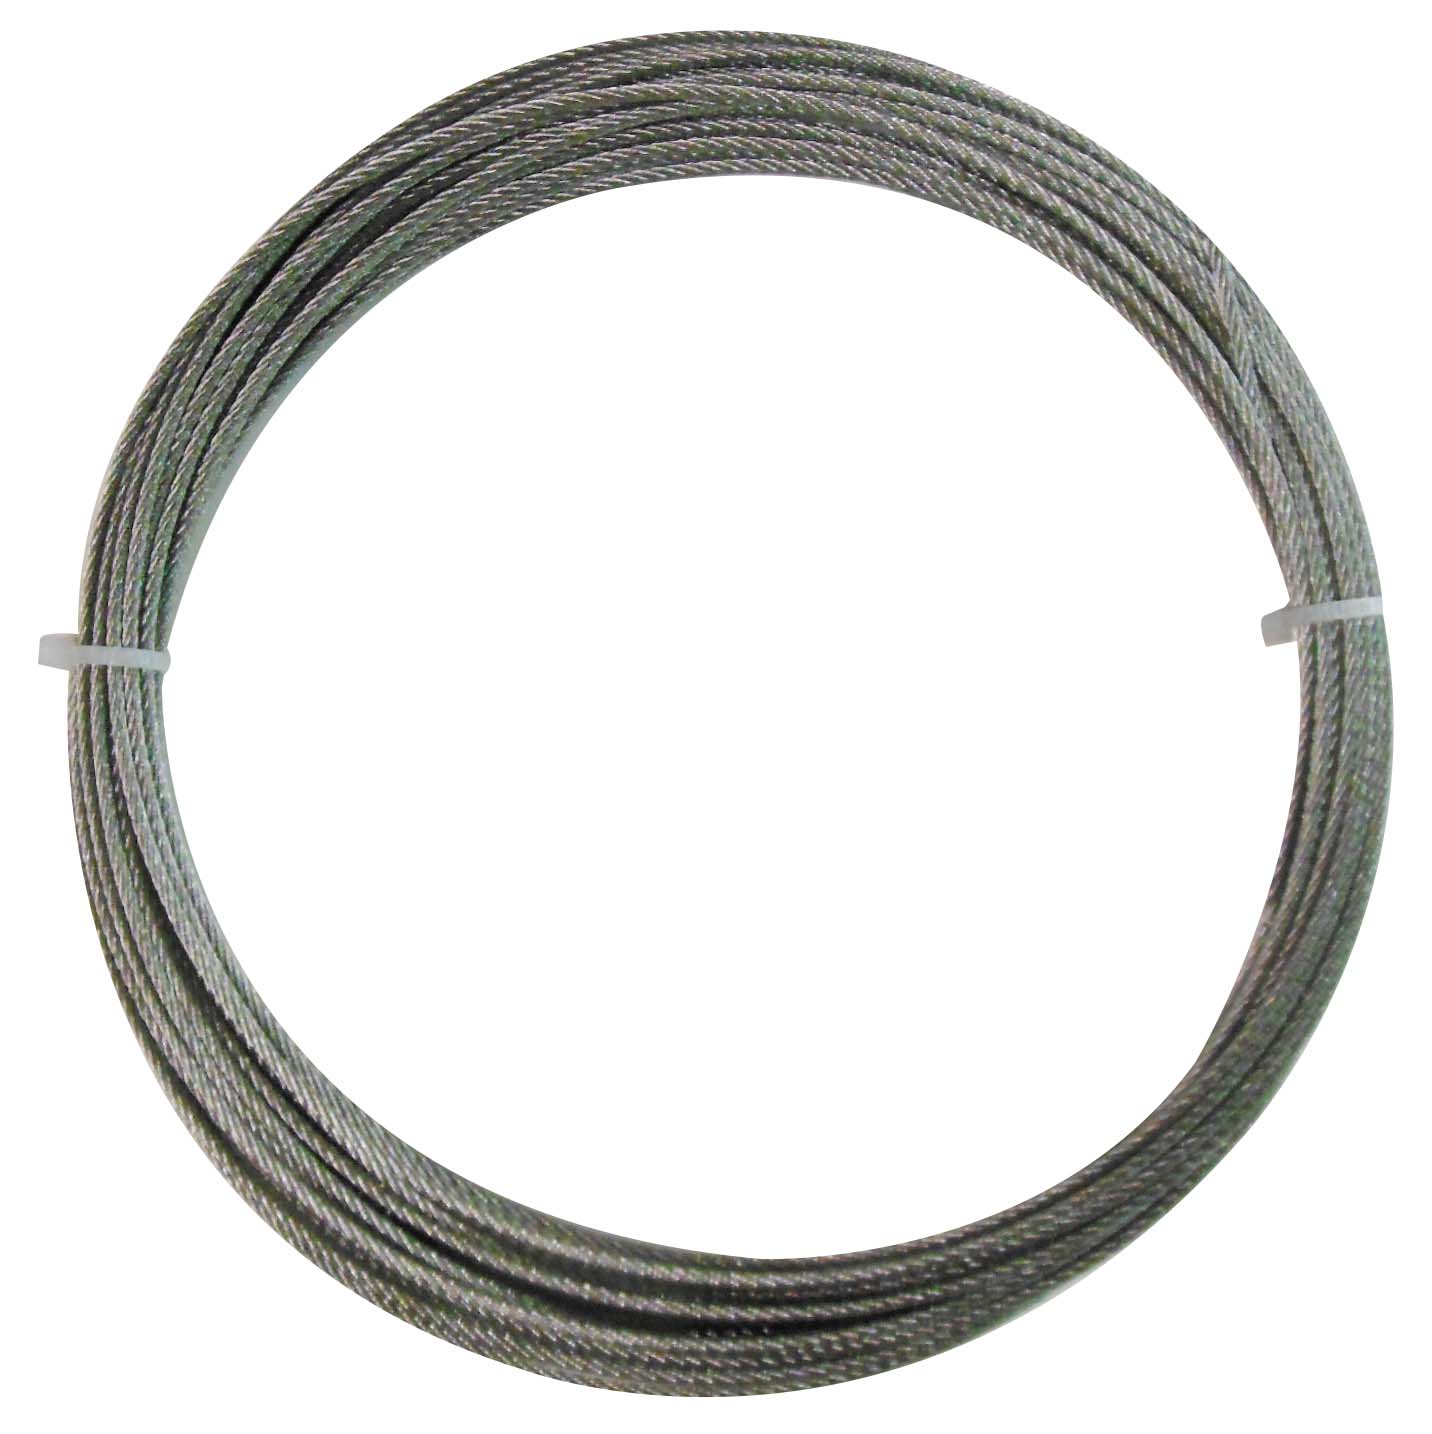 trad ステンレスカットワイヤーロープ ロープ径1.5mm×10m TSC-1510 カットタイプ 耐錆性・耐摩耗性に優れたステンレス